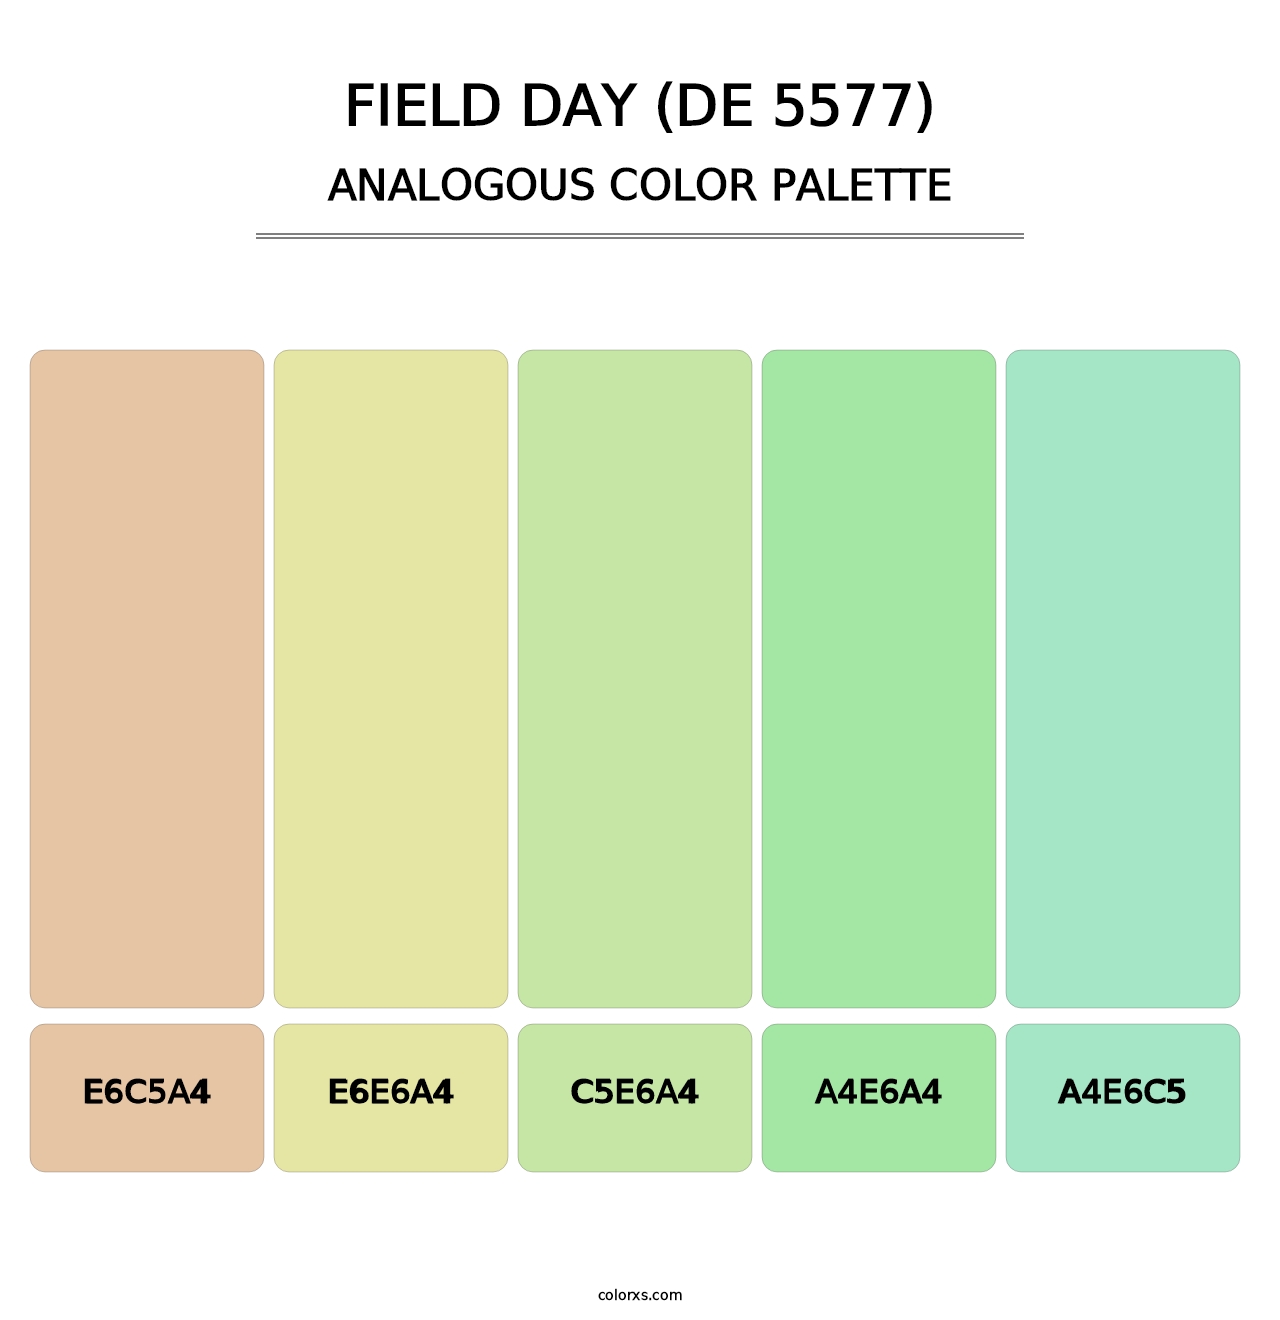 Field Day (DE 5577) - Analogous Color Palette